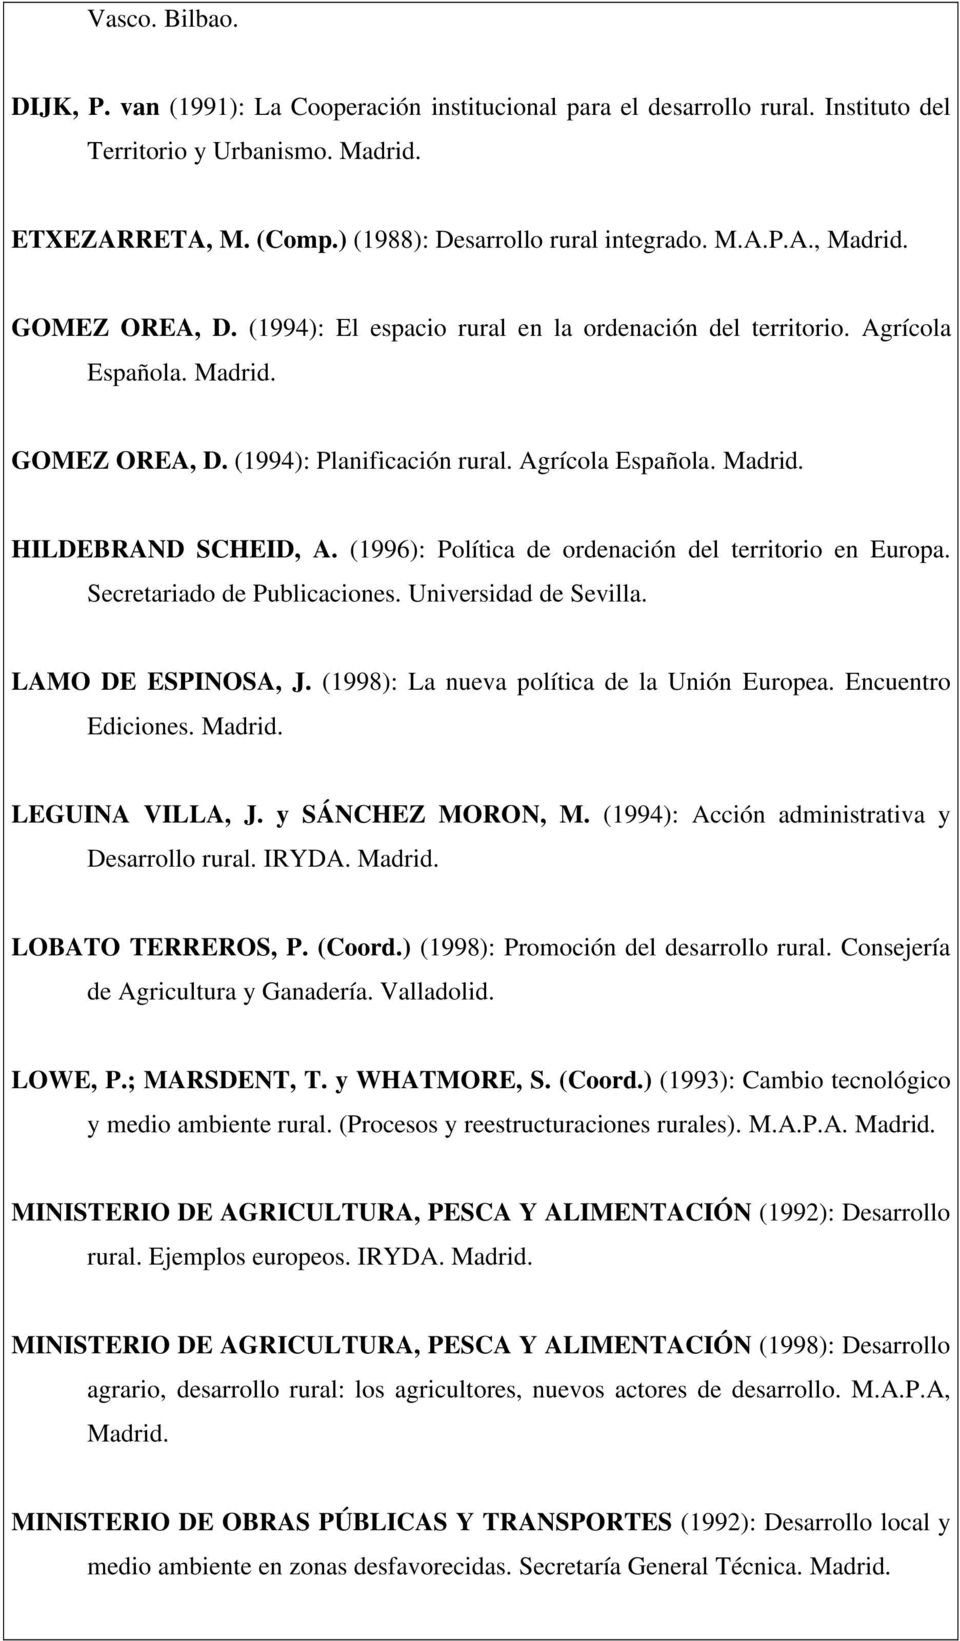 (1996): Política de ordenación del territorio en Europa. Secretariado de Publicaciones. Universidad de Sevilla. LAMO DE ESPINOSA, J. (1998): La nueva política de la Unión Europea. Encuentro Ediciones.